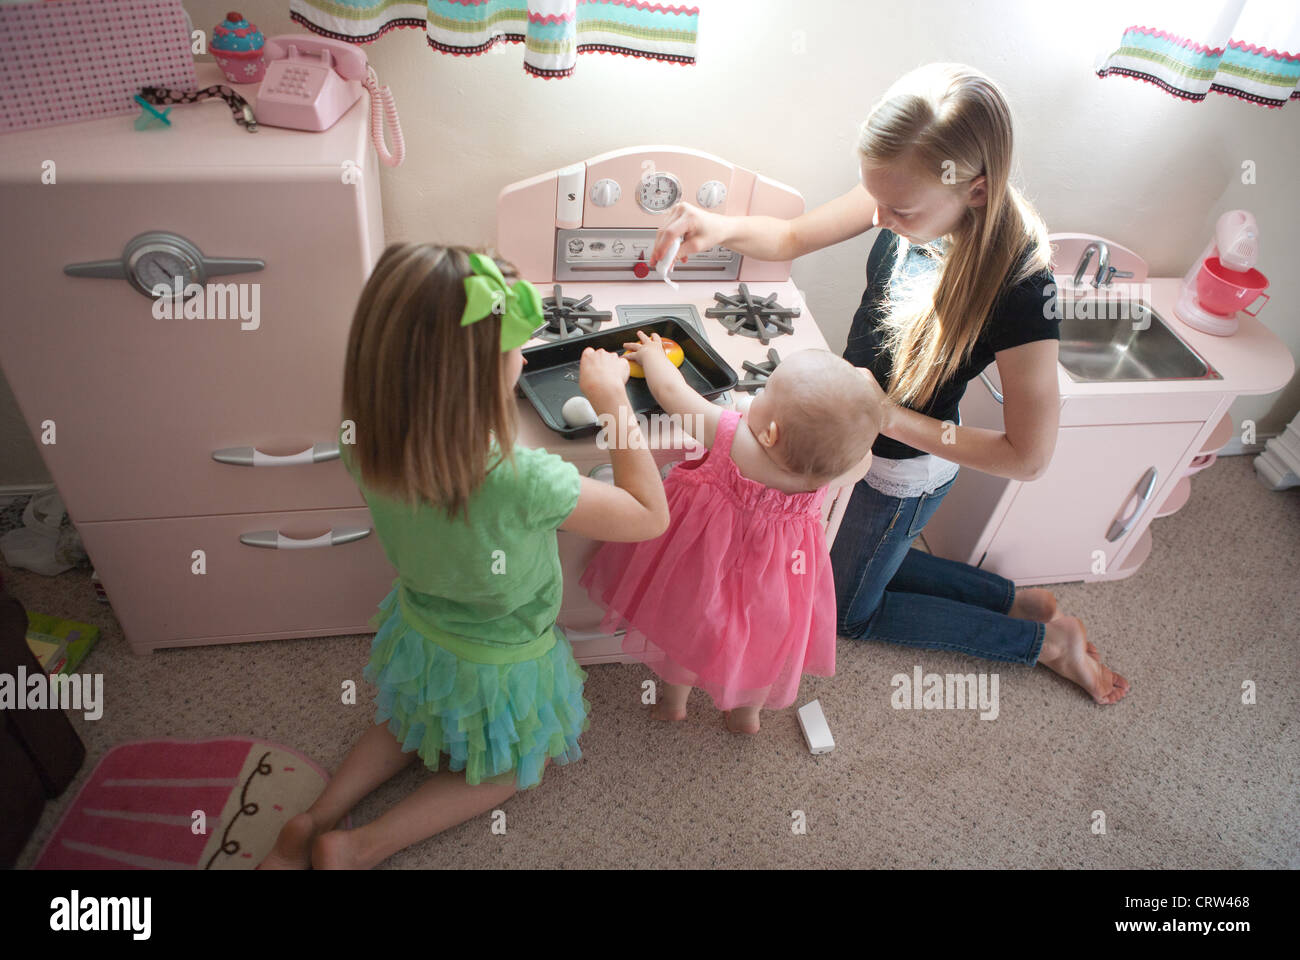 Zwei ältere Schwestern mit einjähriger Geschwister im Rollenspiel Küche zu Hause zu spielen. Stockfoto